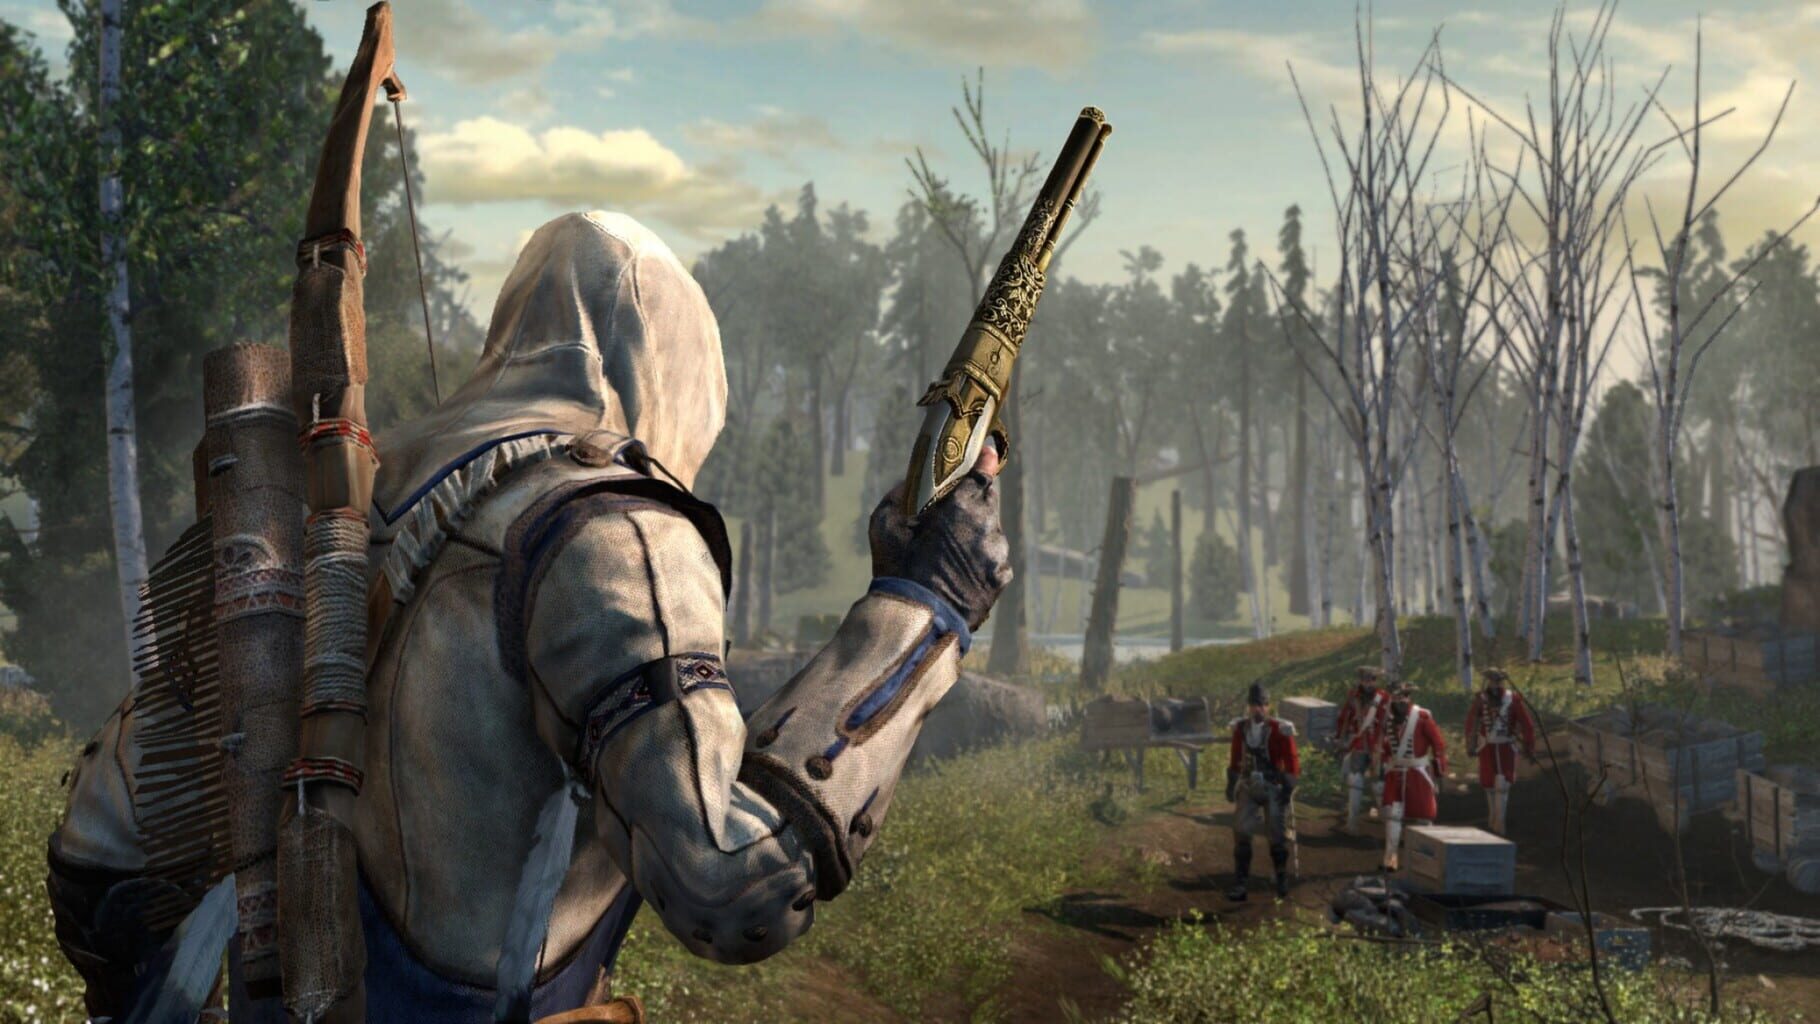 Captura de pantalla - Assassin's Creed III: The Hidden Secrets Pack